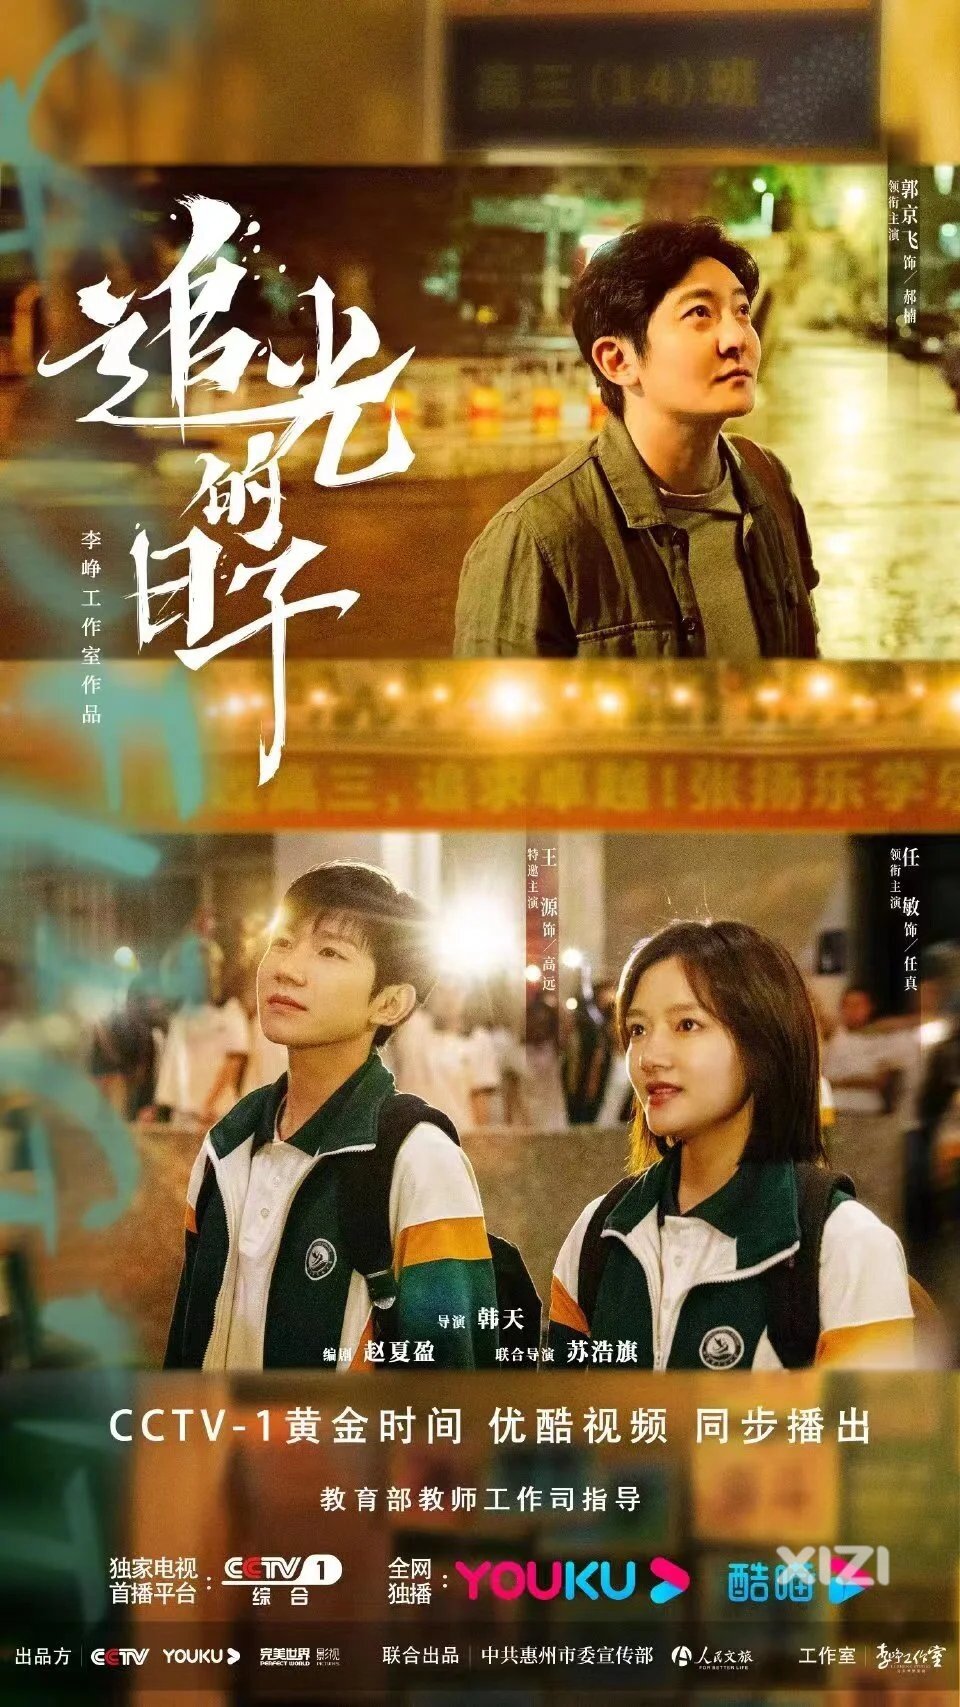 全程惠州取景！电视剧《追光的日子》29日在CCTV-1黄金档开播！